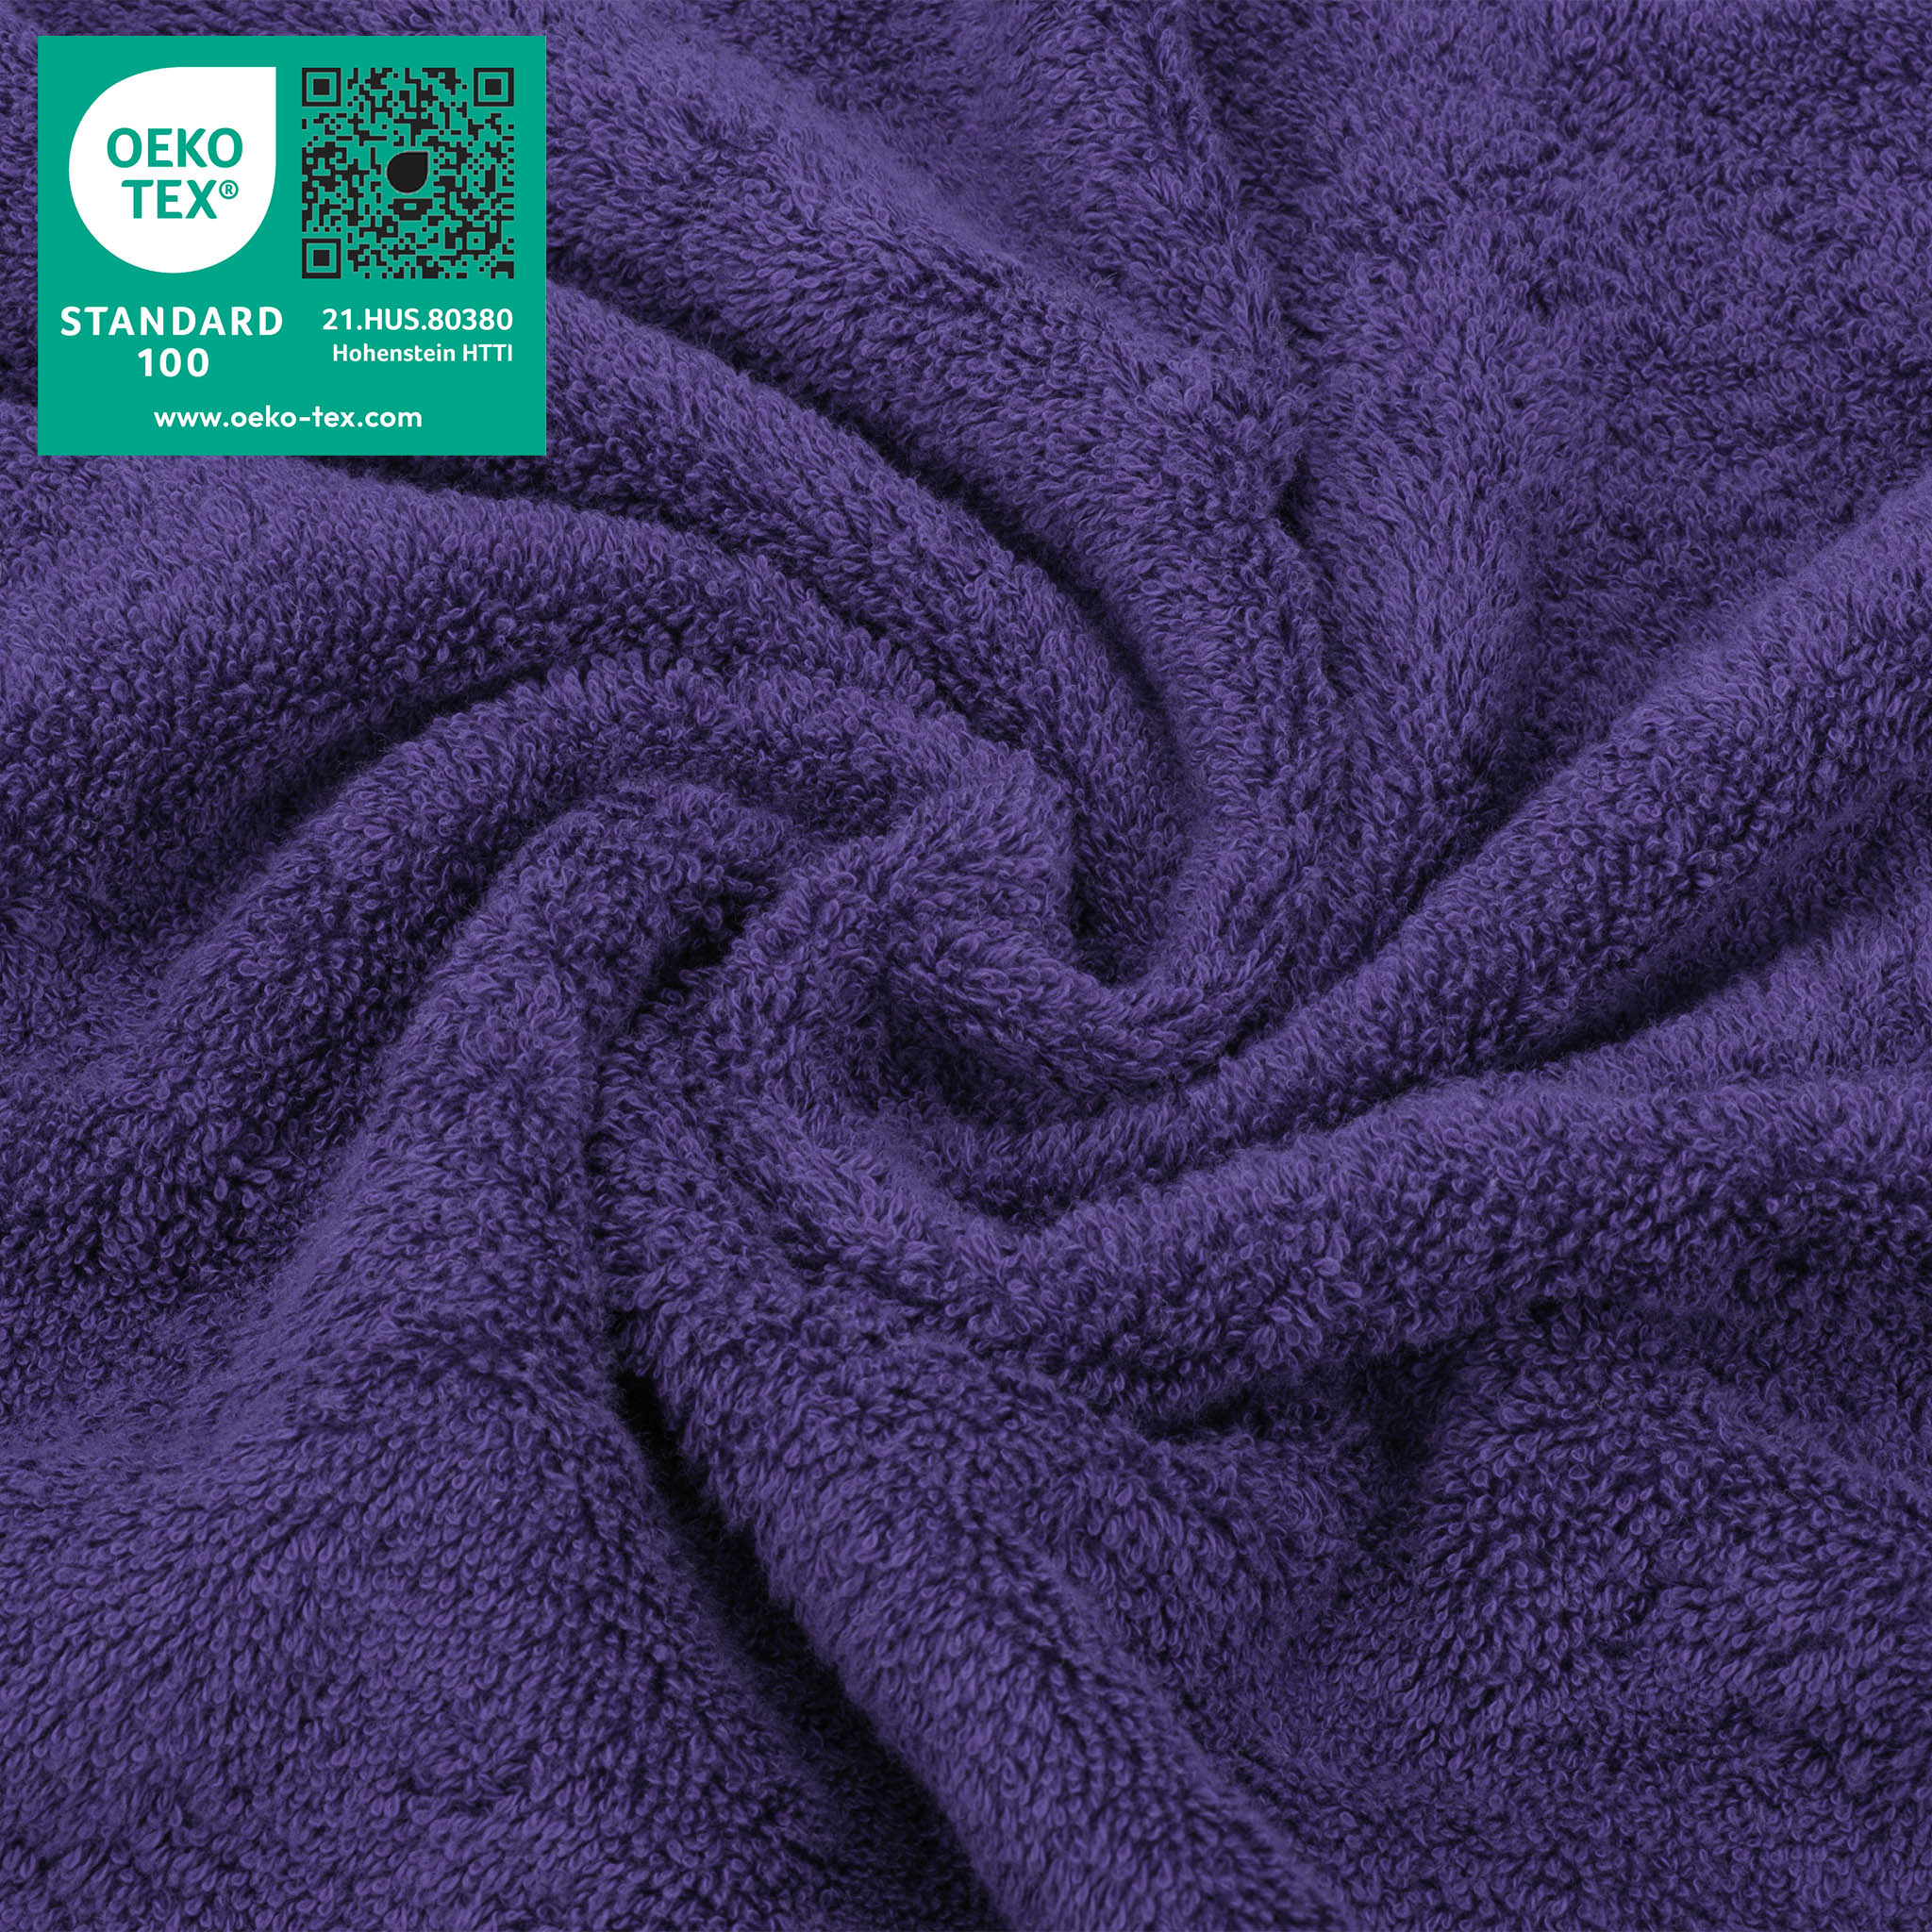 American Soft Linen 100% Turkish Cotton 4 Piece Washcloth Set purple-3